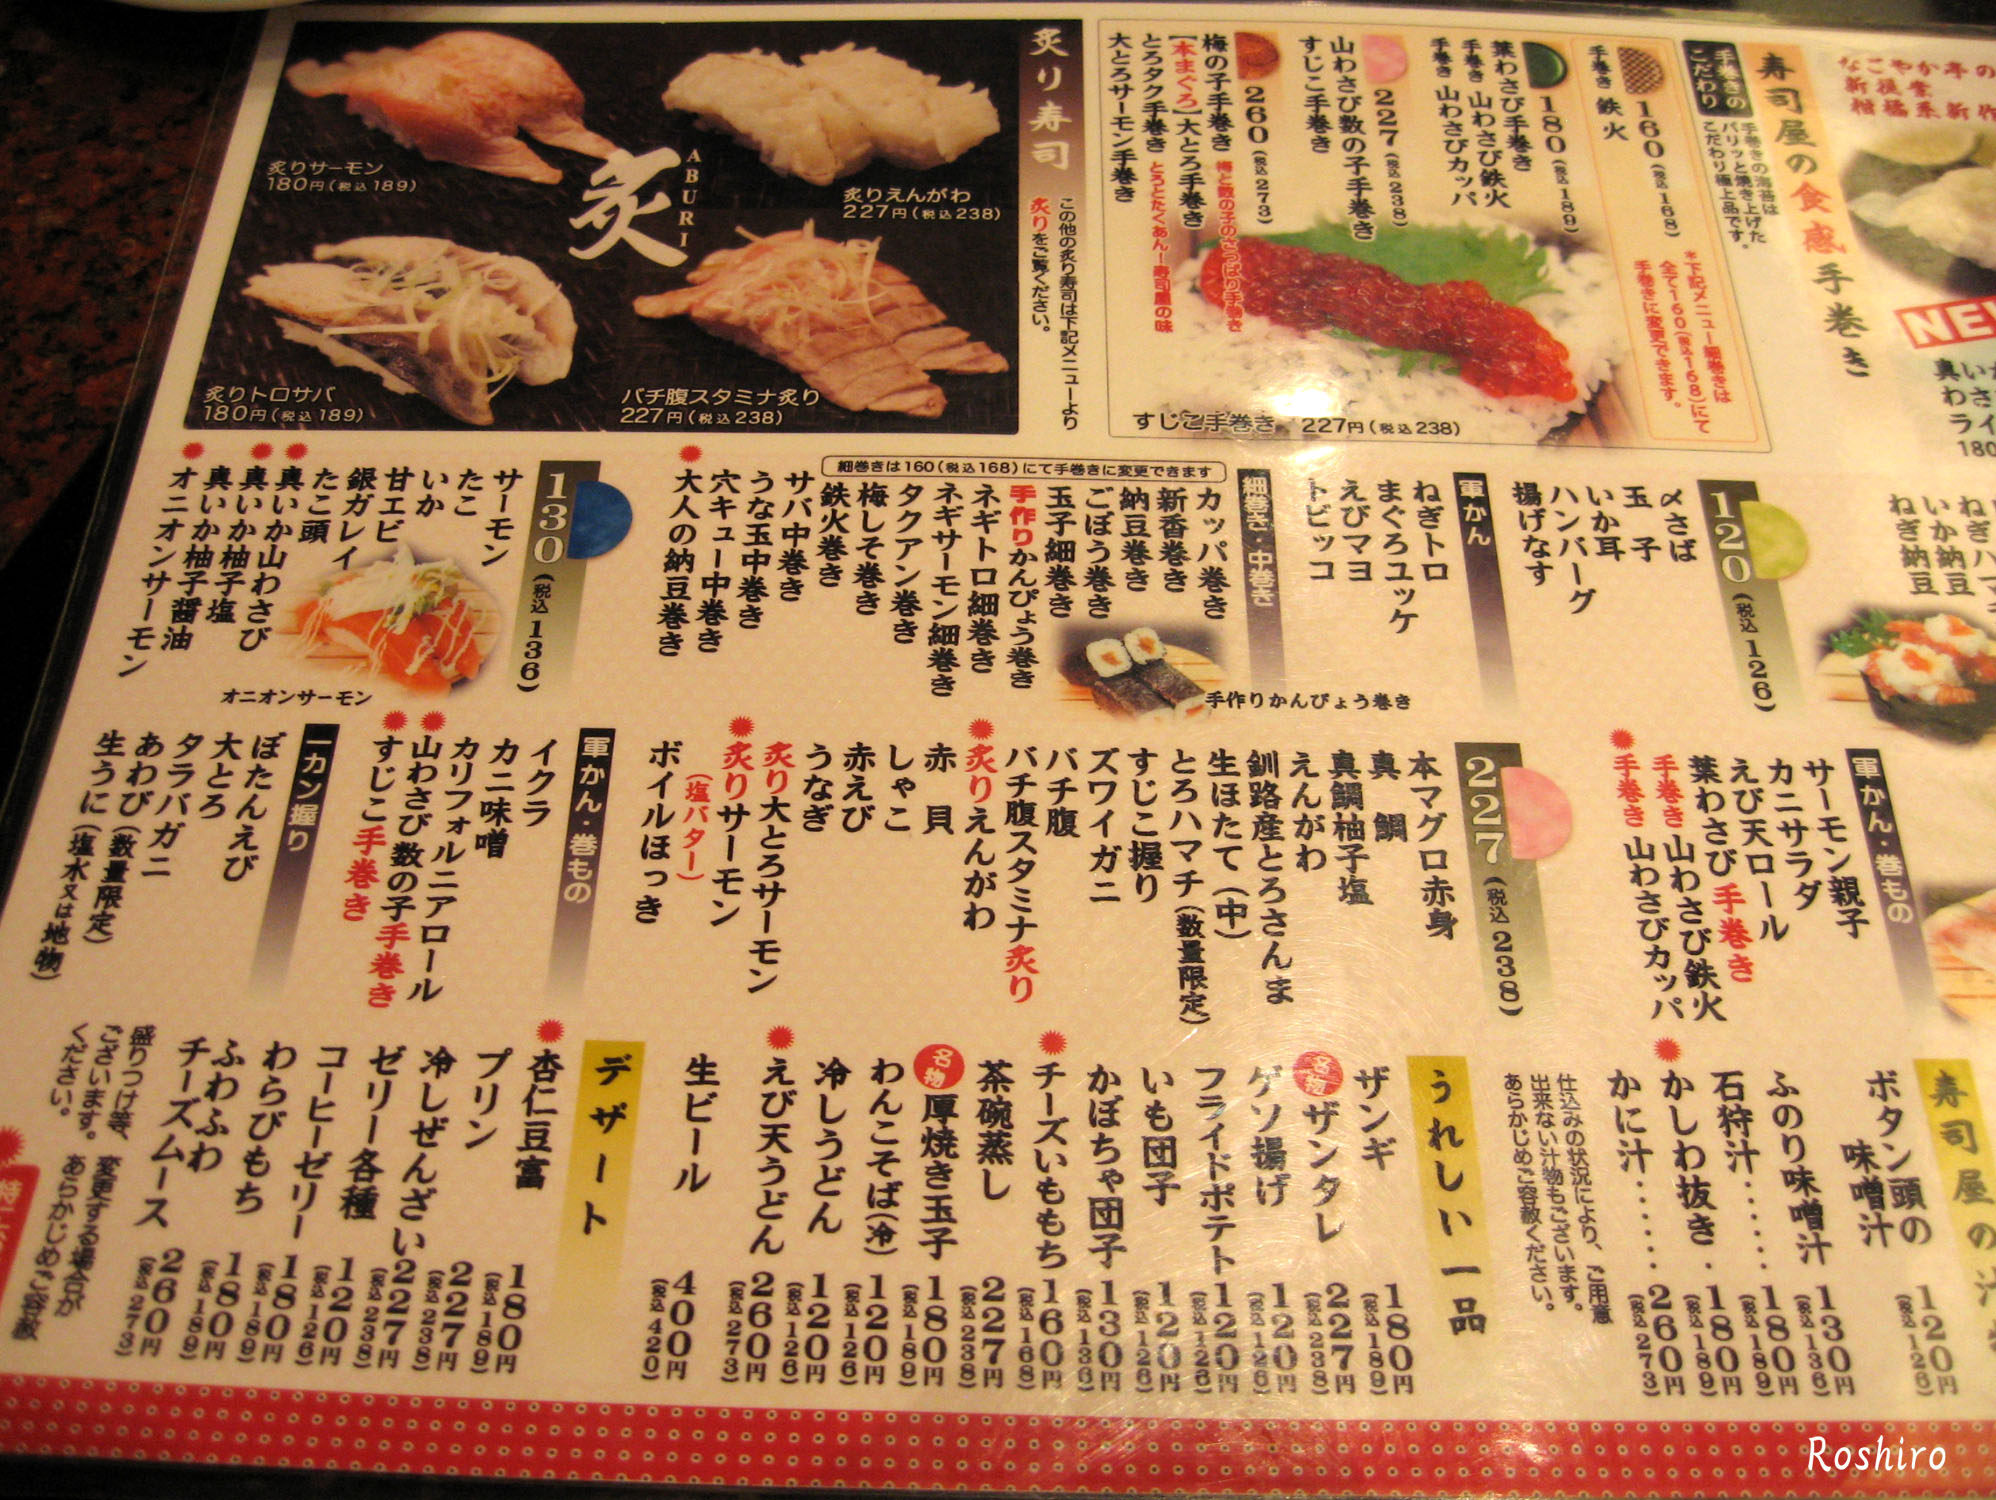 回転寿司 なごやか亭 でランチ 子連れ海外旅行 美味しいものfrom札幌